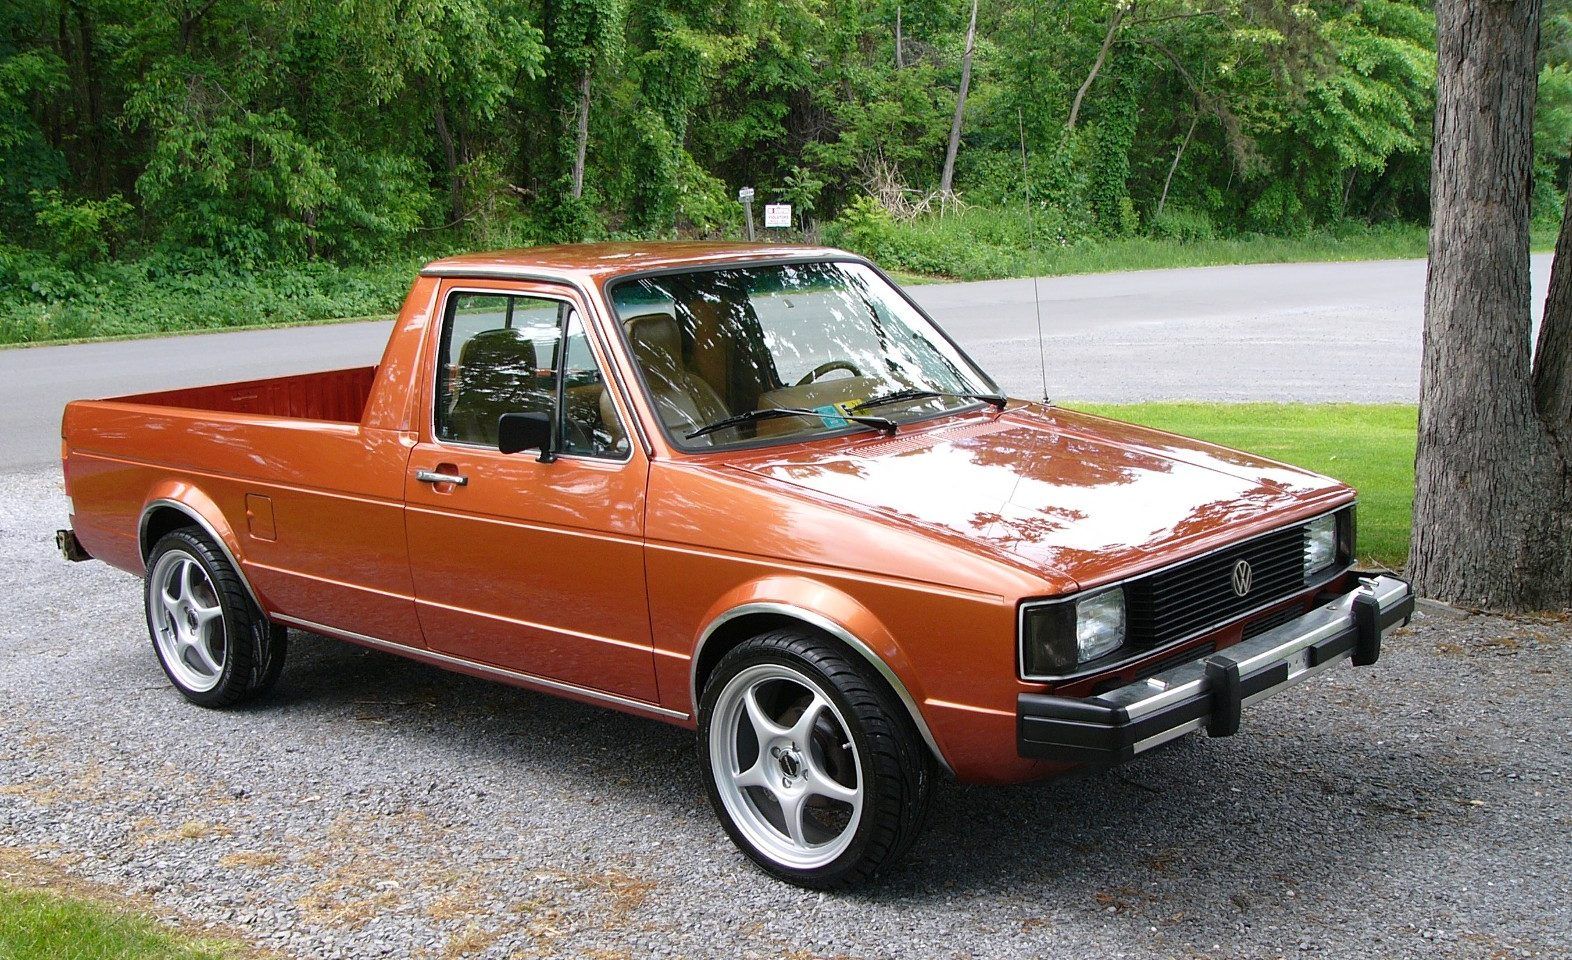 VW-Caddy